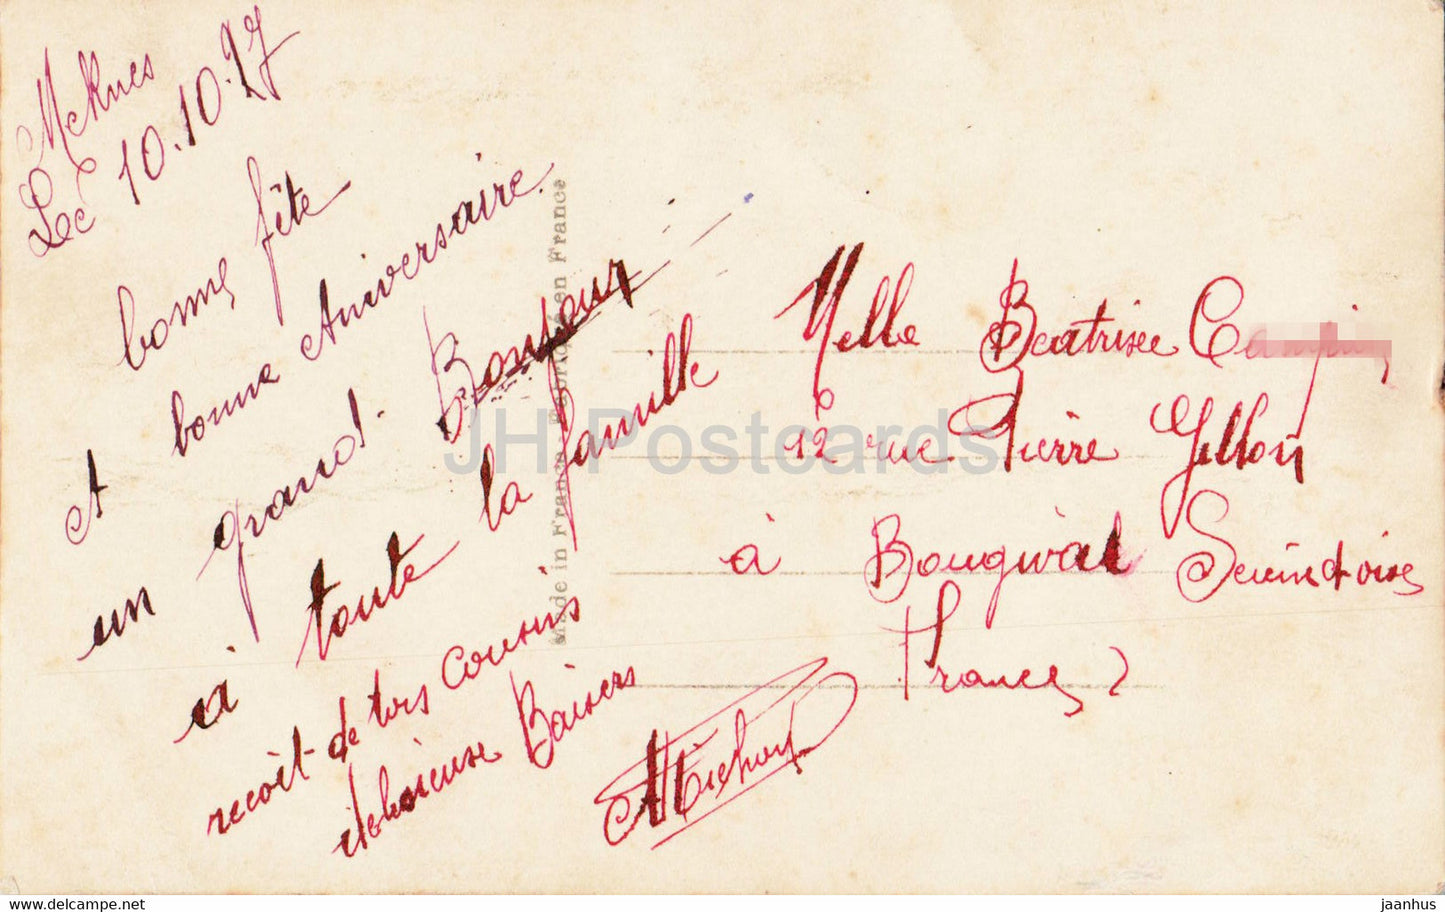 Carte de voeux - Bonne Fête - fleurs - pensée - DEDE 1289 - carte postale ancienne - 1927 - France - occasion